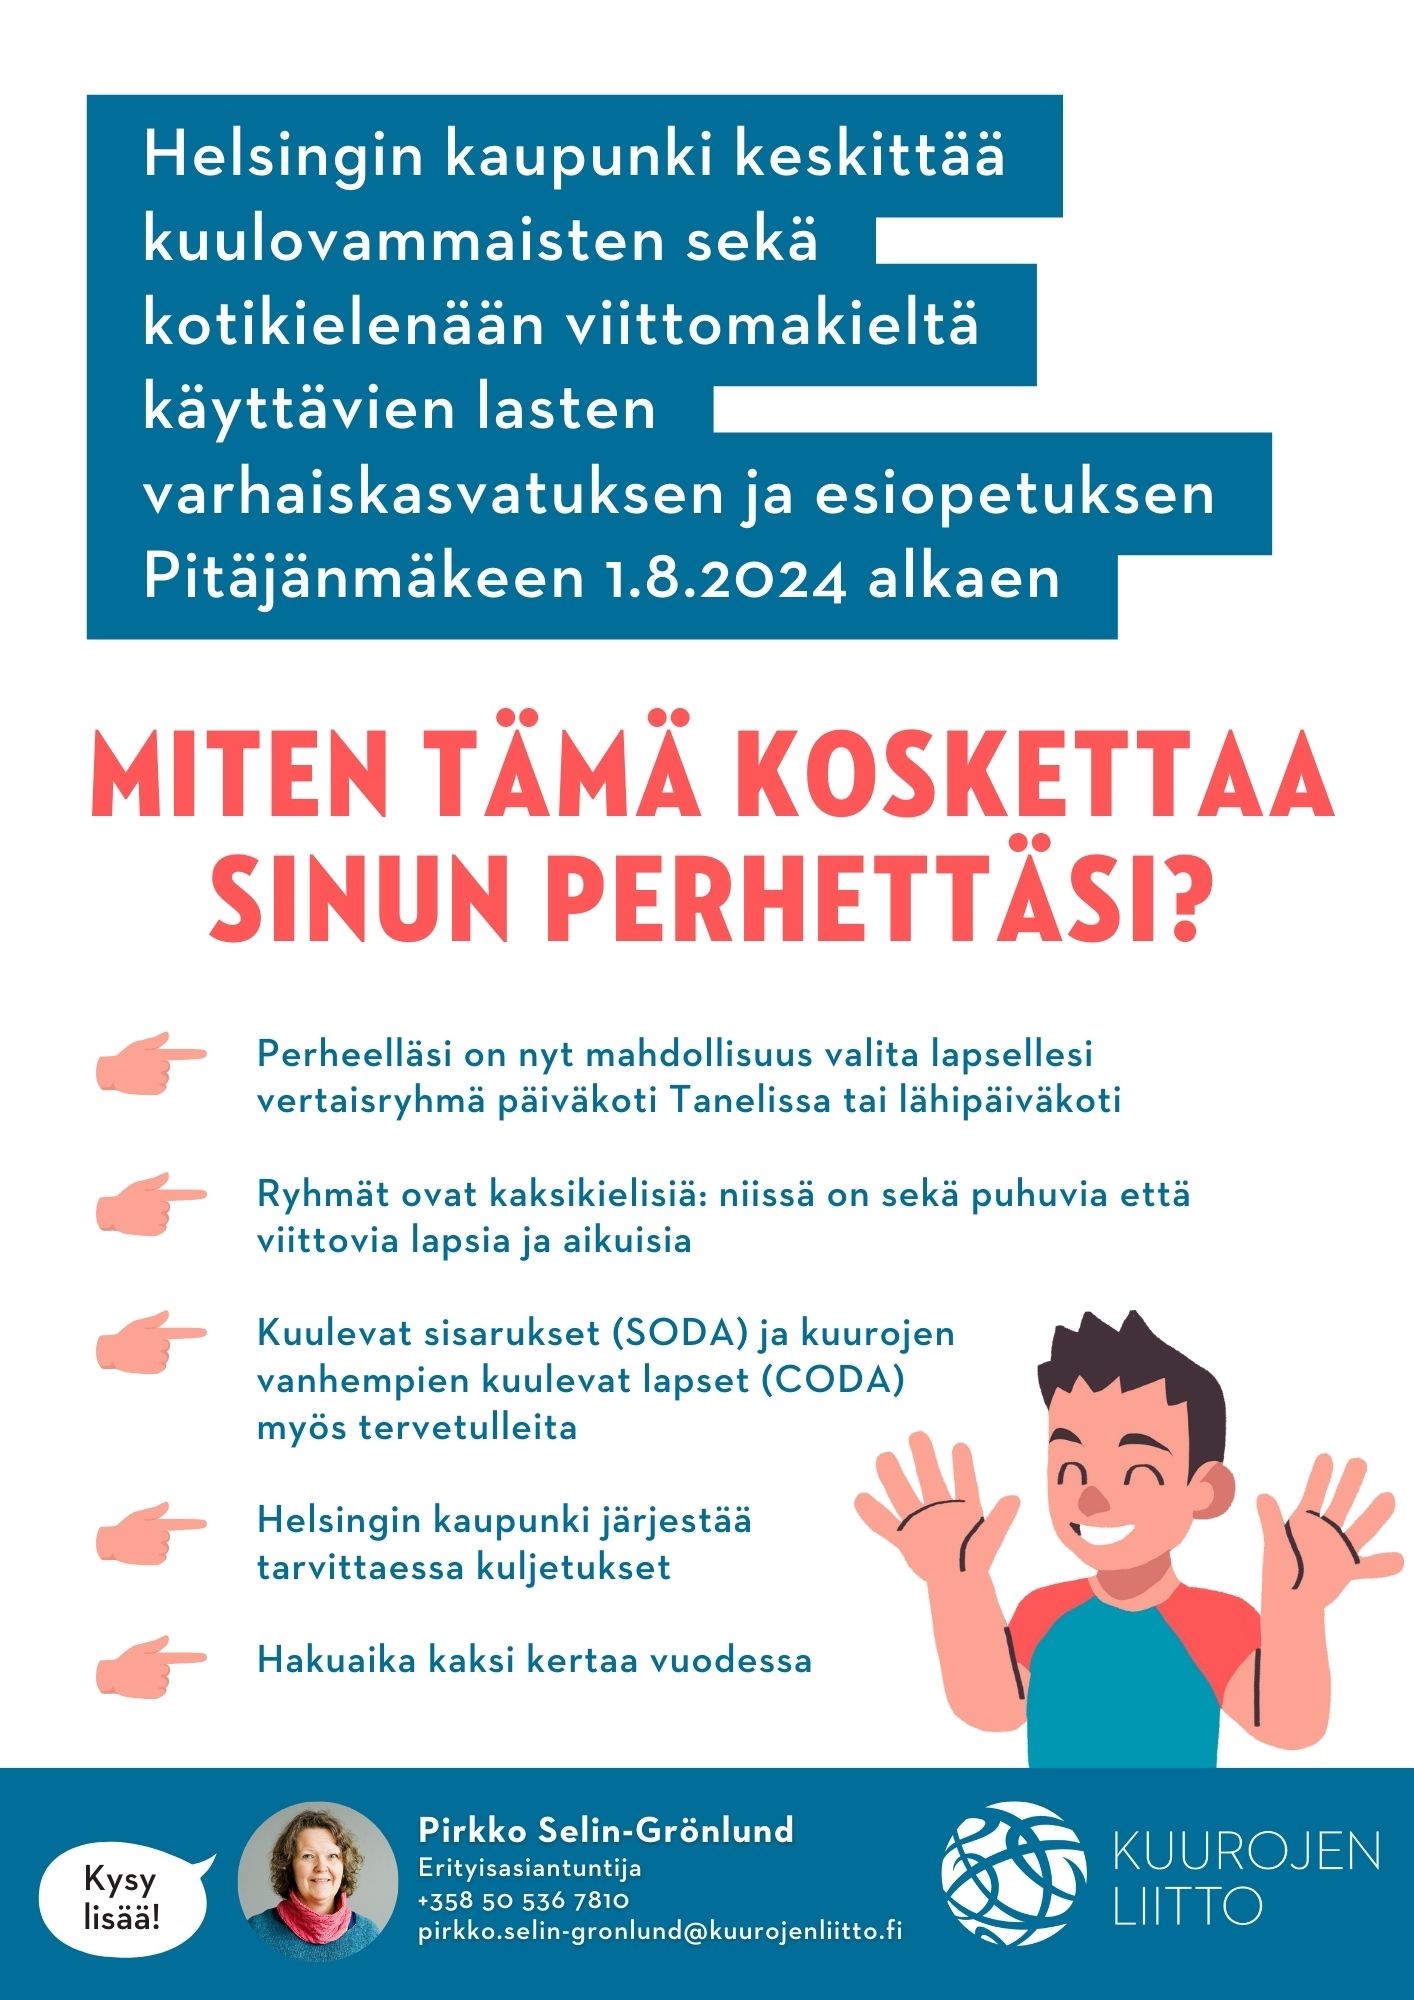 Helsingin kaupunki keskittää kuulovammaisten sekä kotikielenään viittomakieltä käyttävien lasten varhaiskasvatuksen ja esiopetuksen Pitäjänmäkeen 1.8.2024 alkaen.